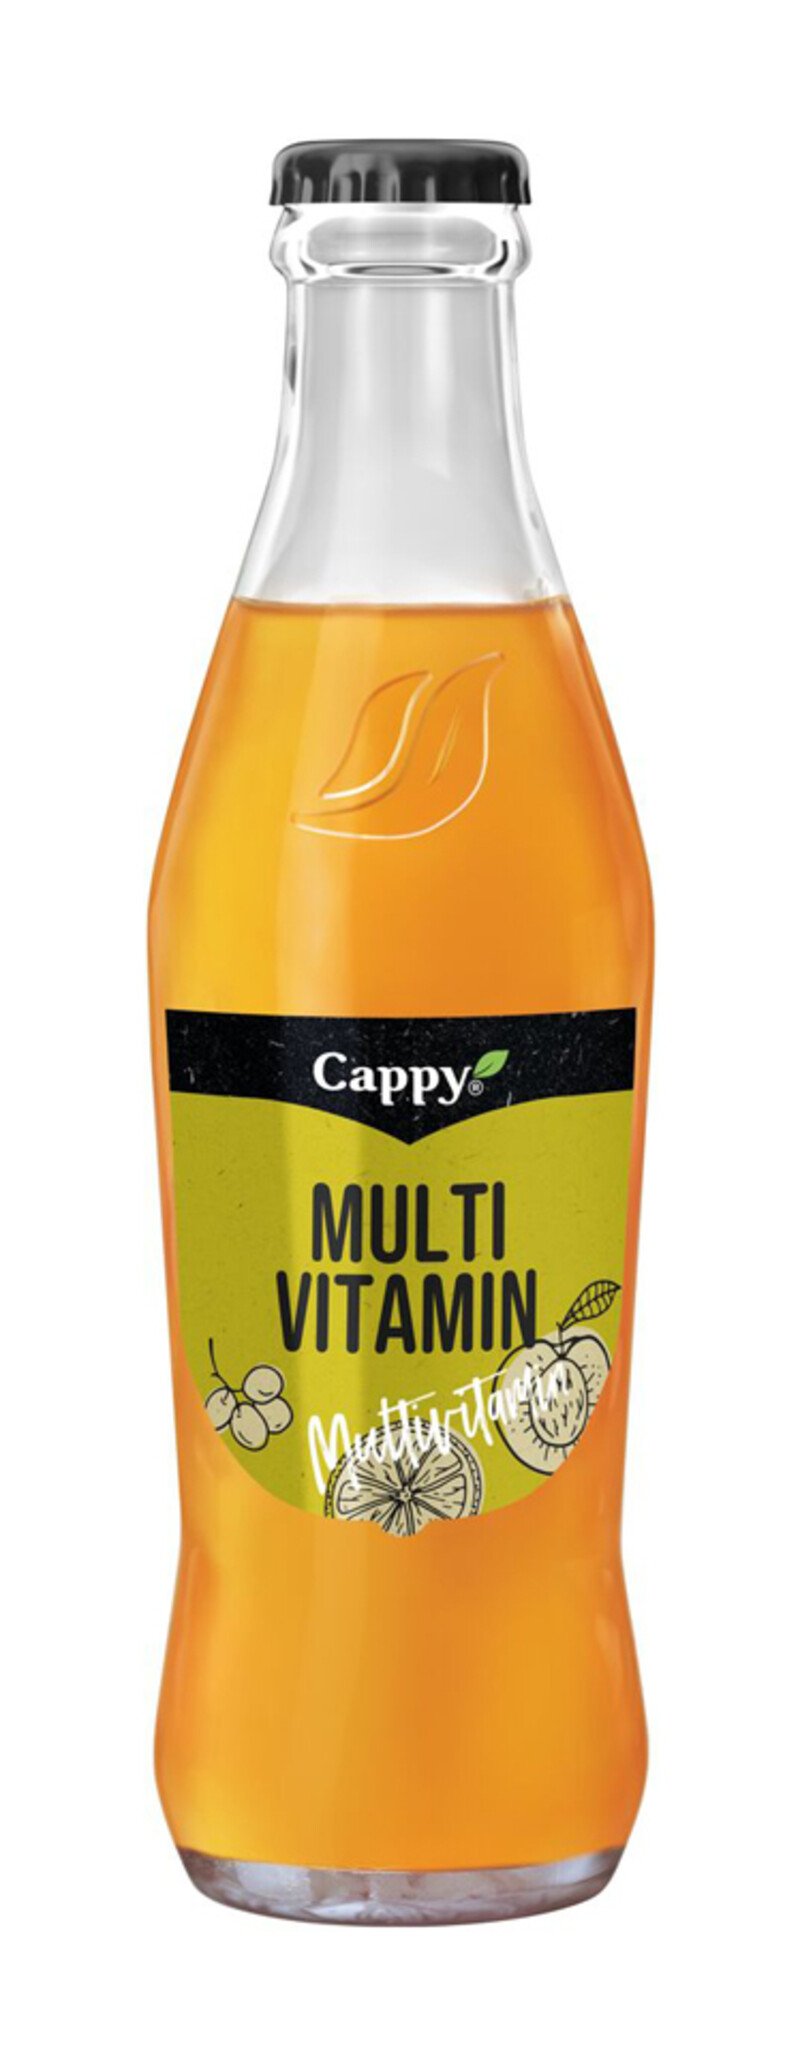 Cappy Multivitamin (24 Fl. à 0,25 Lt.)